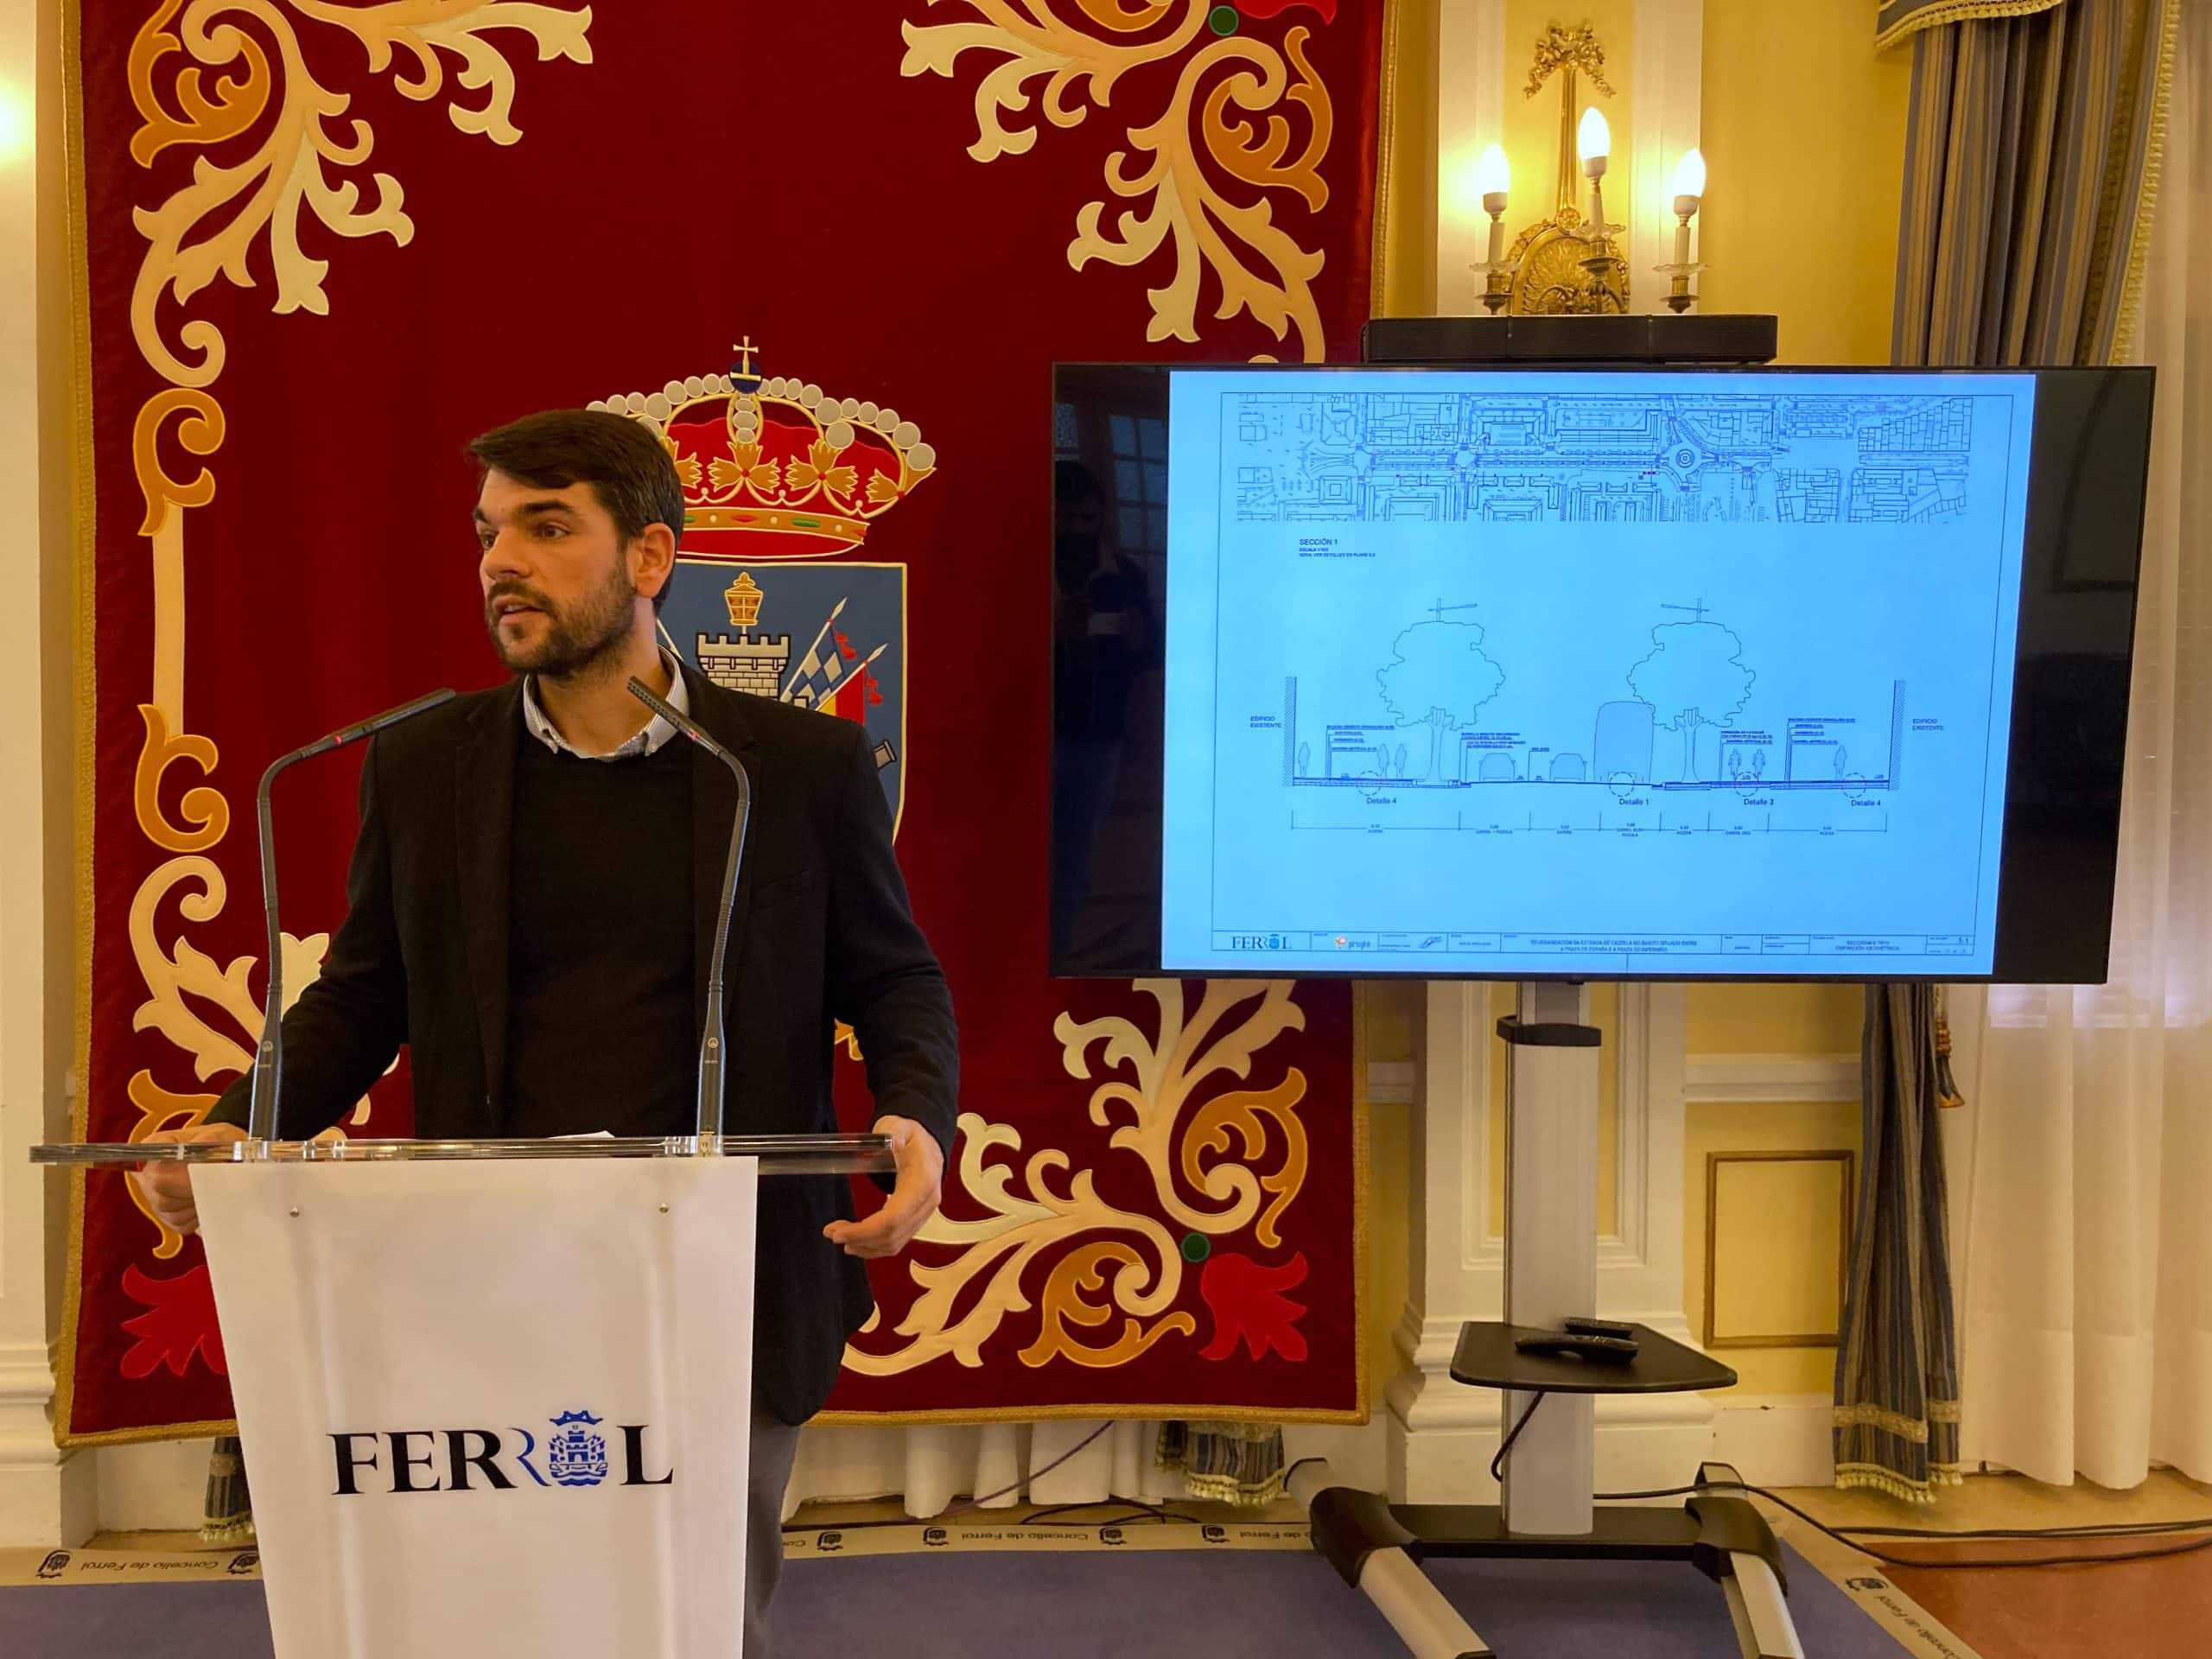 El portavoz del gobierno y concejala de Urbanismo, Julián Reina, presentó esta mañana el proyecto